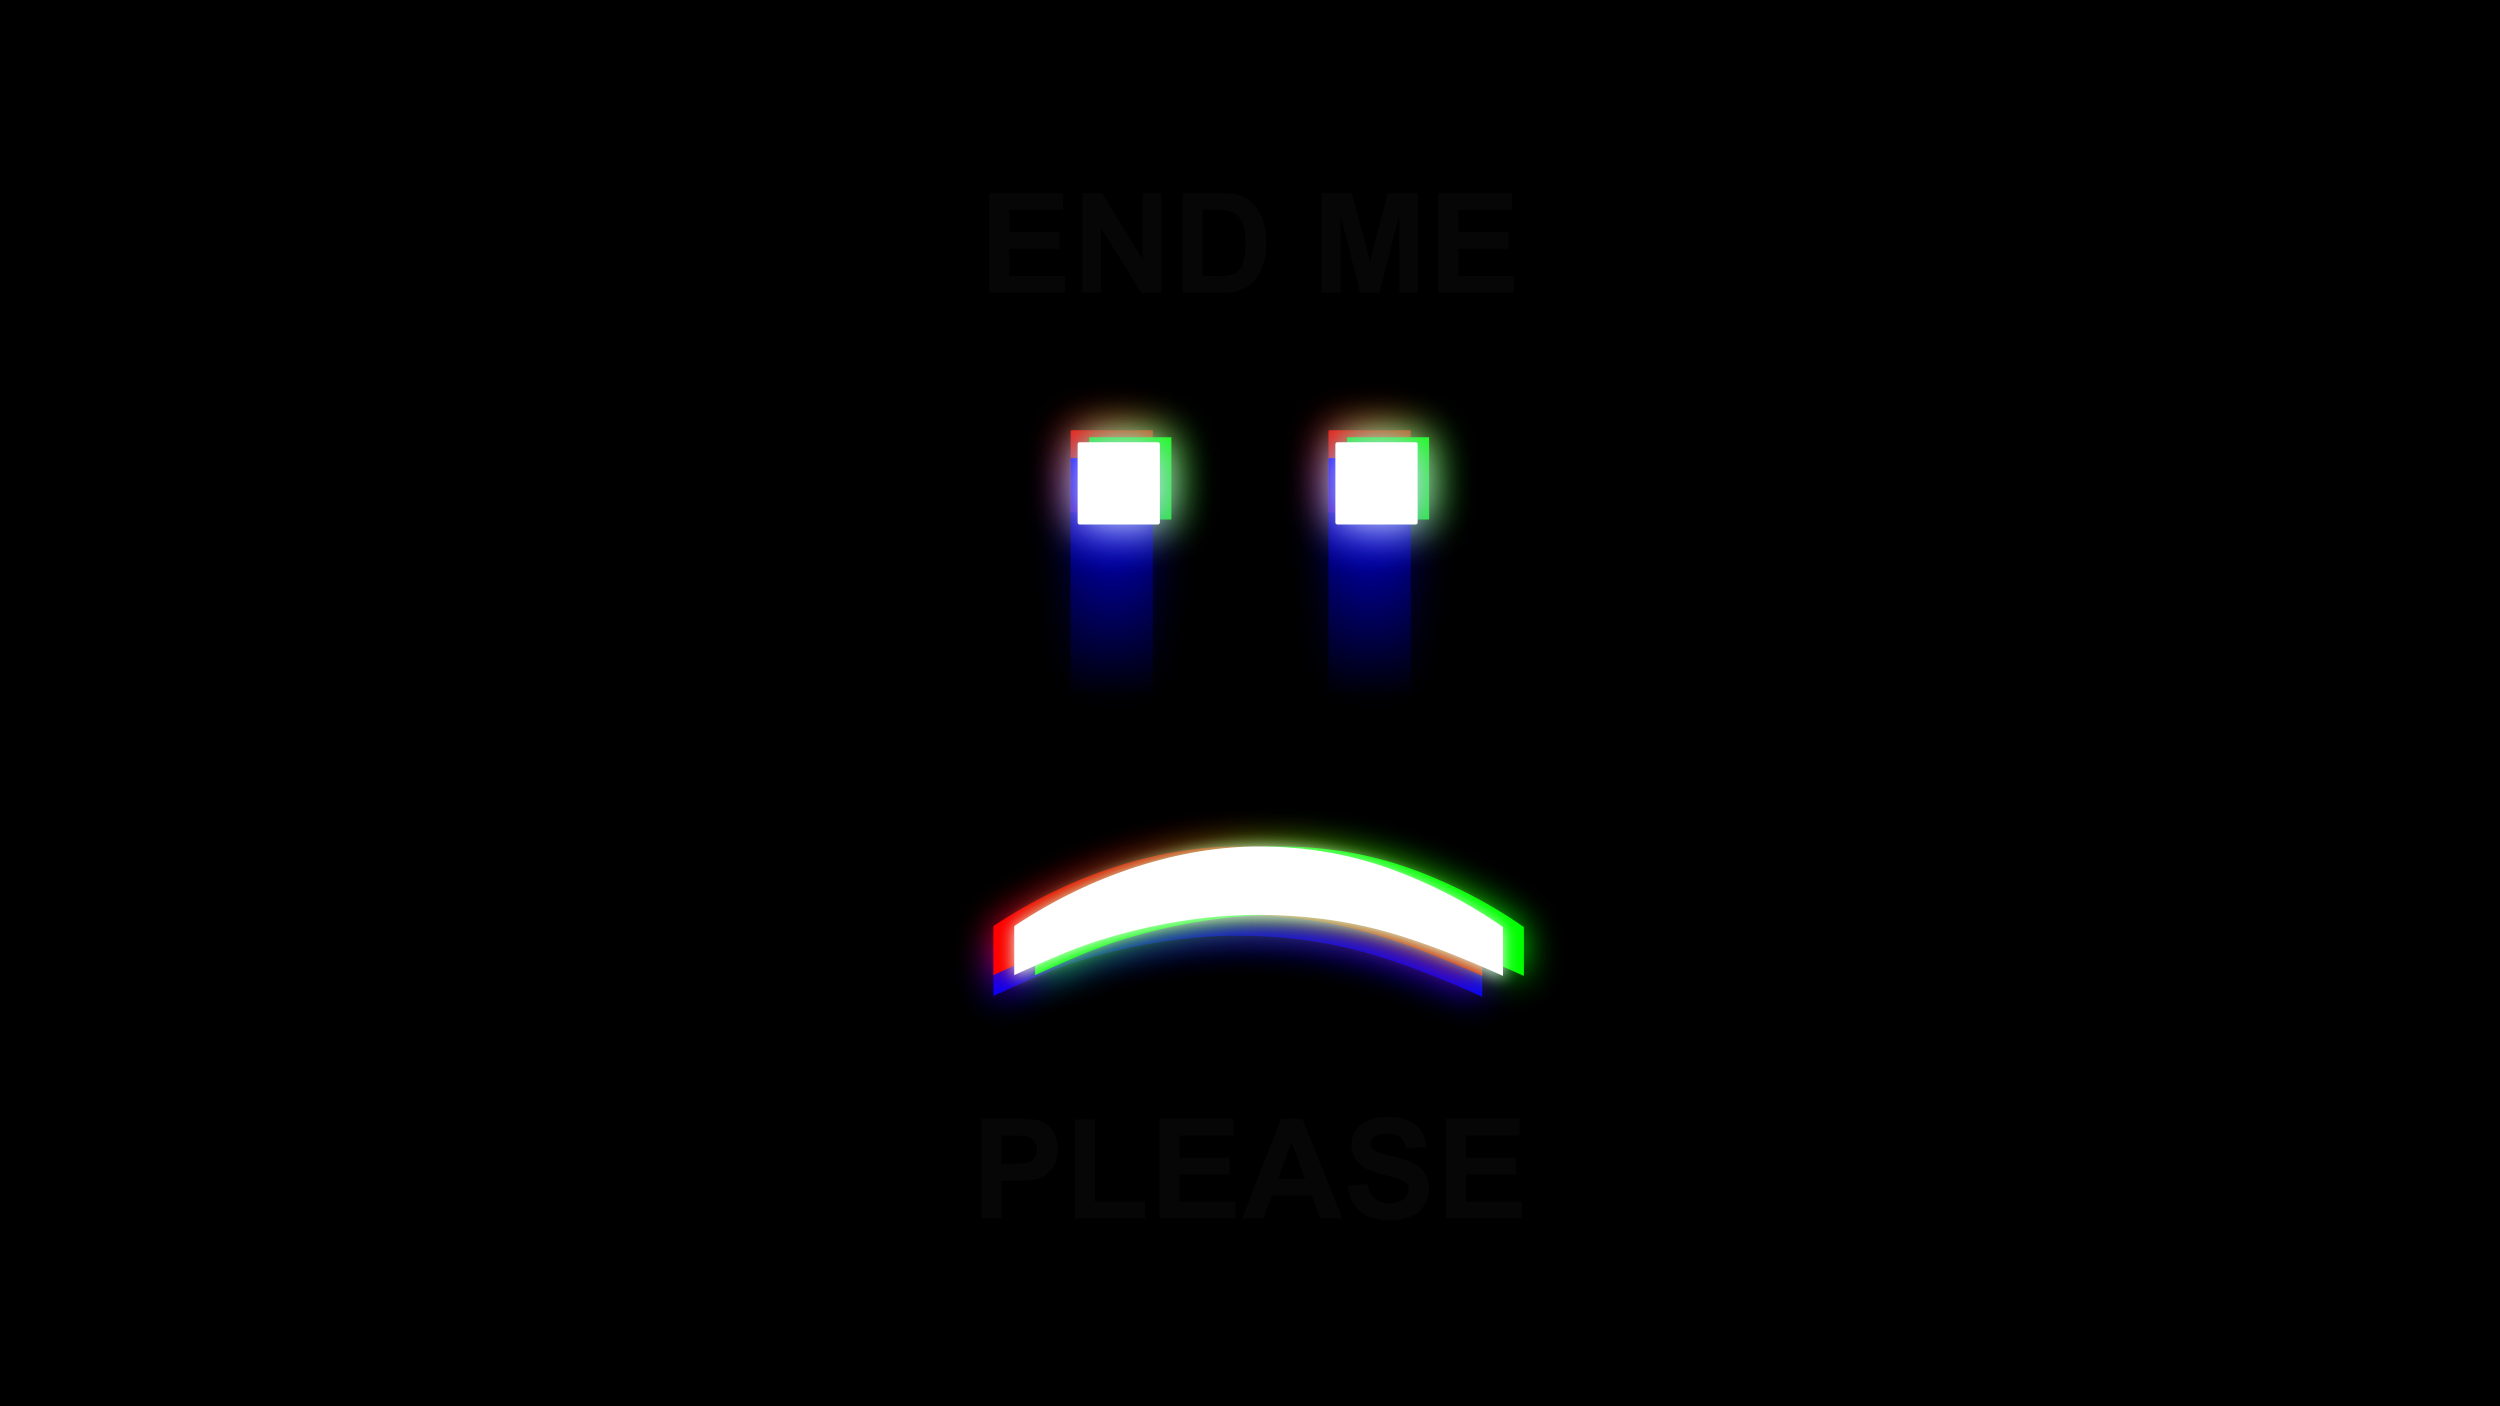 General 2500x1406 minimalism dark background dark Emoji depressing glitch art dark humor simple background frown digital art